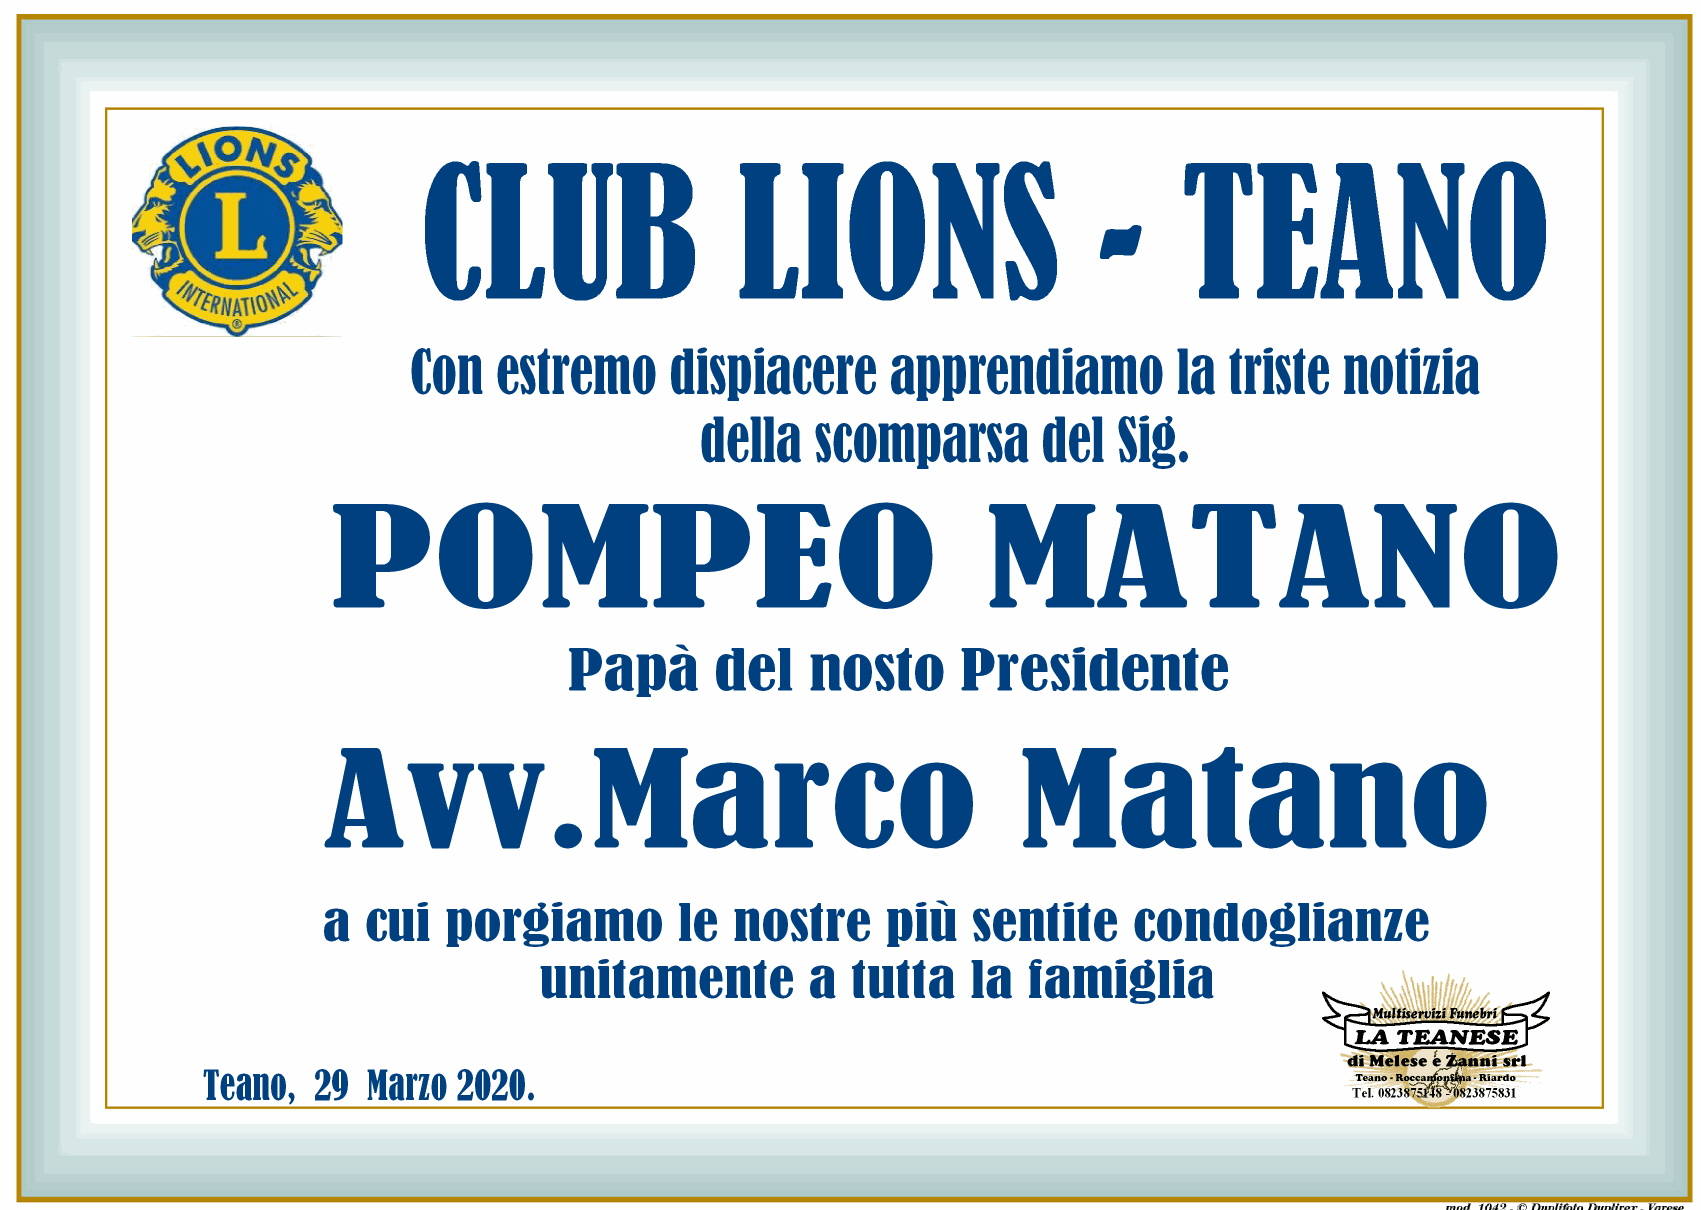 Club Lions - Teano